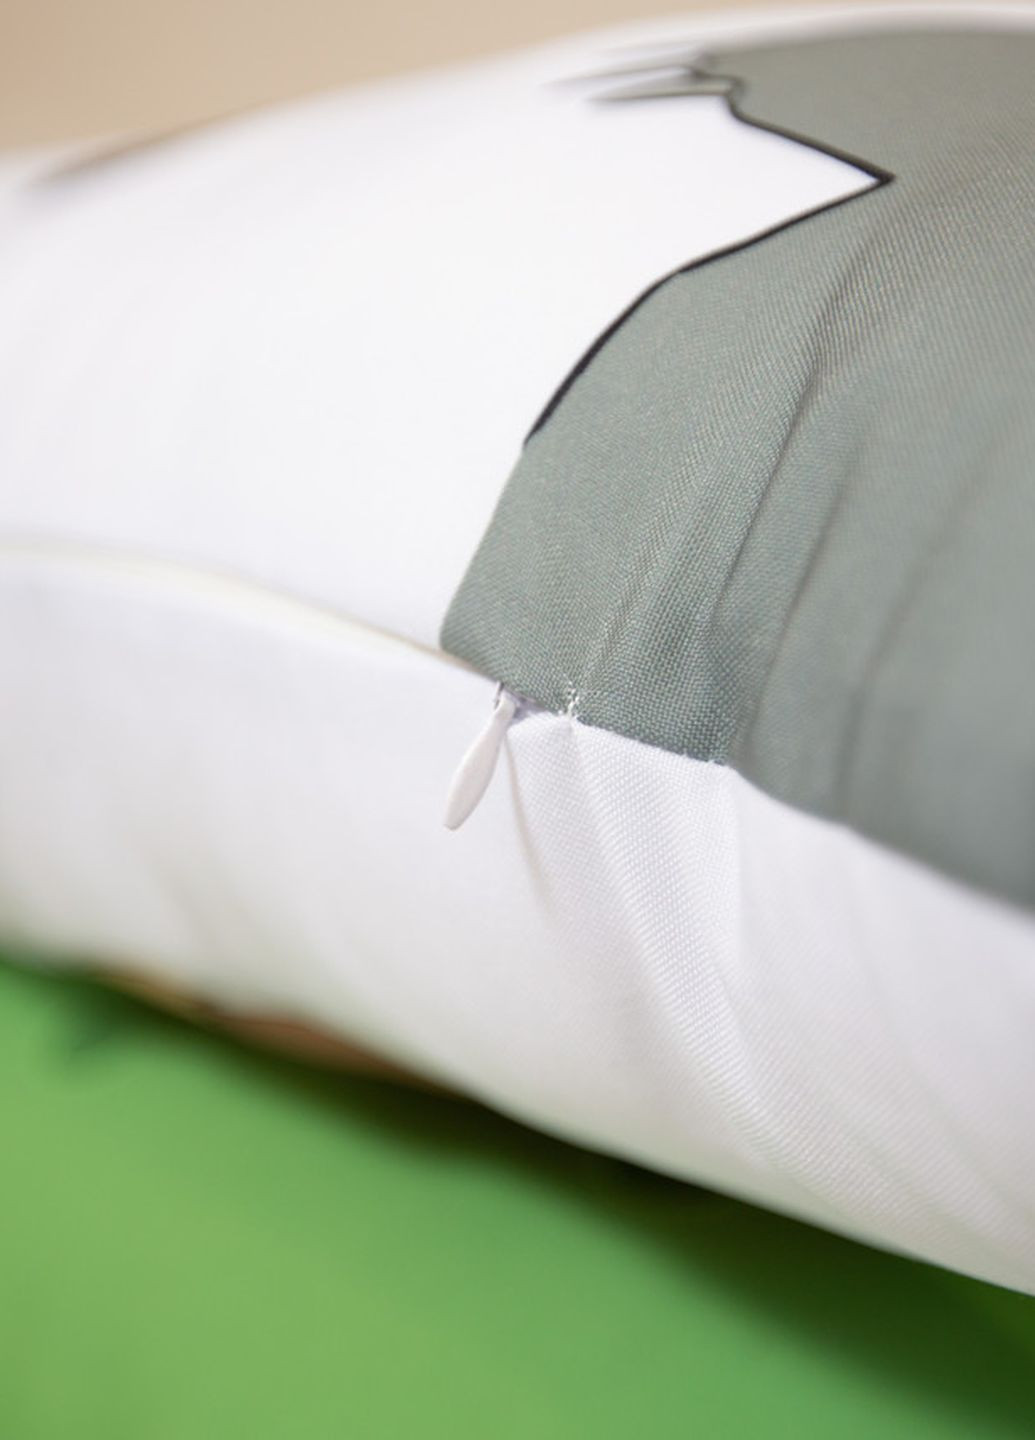 Подушка дакимакура Геншин Кавех декоративная ростовая подушка для обнимания 30*60 No Brand (261407111)